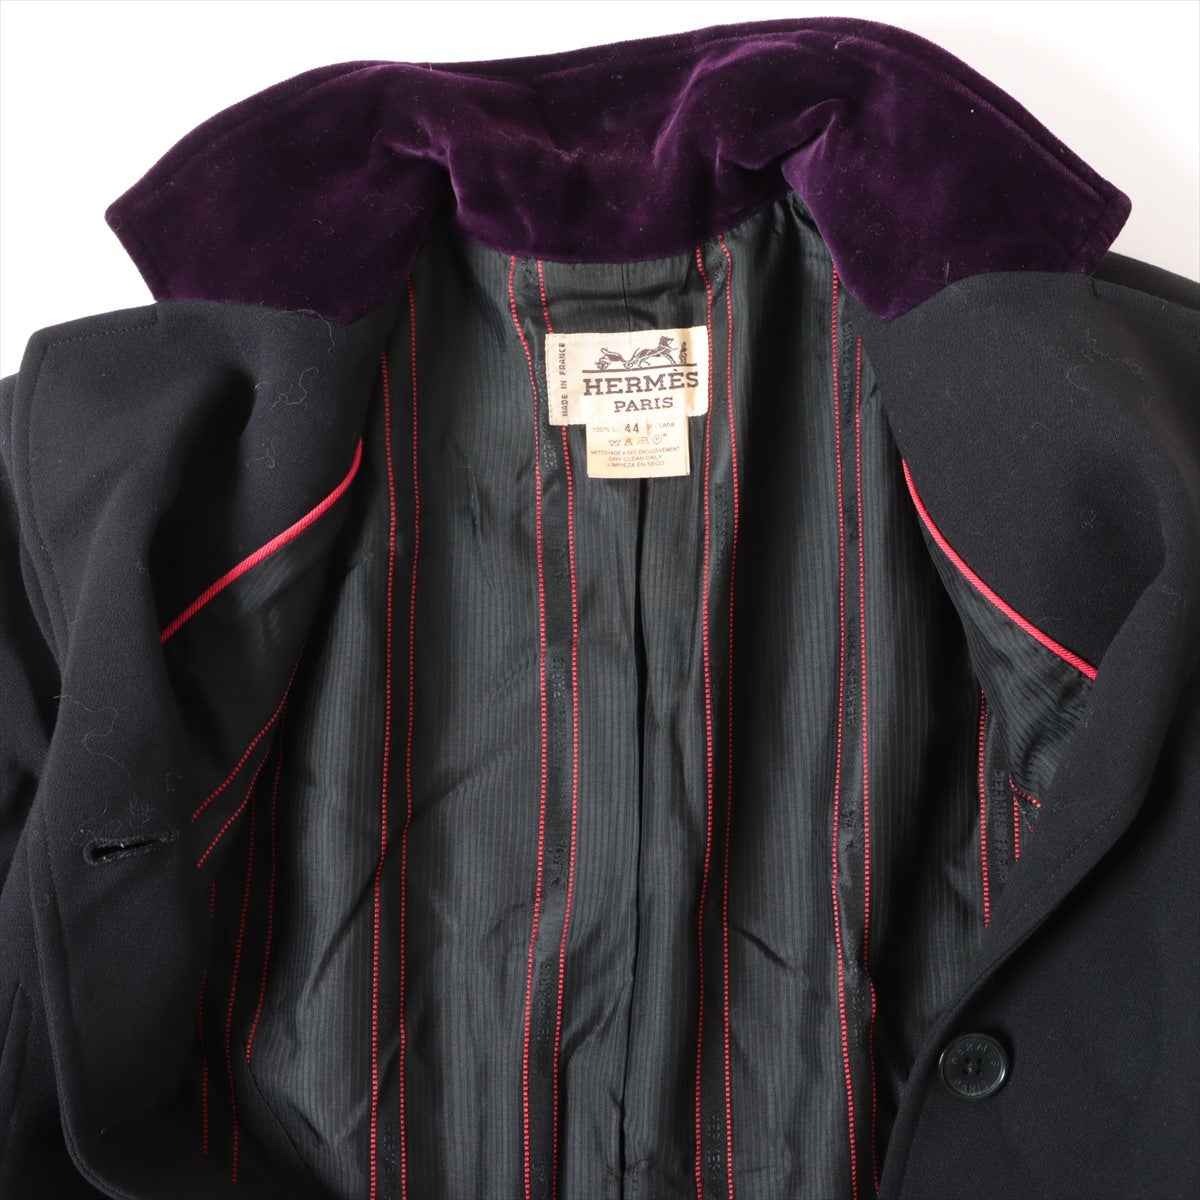 Hermès Cotton & wool Jacket 44 Ladies' Black